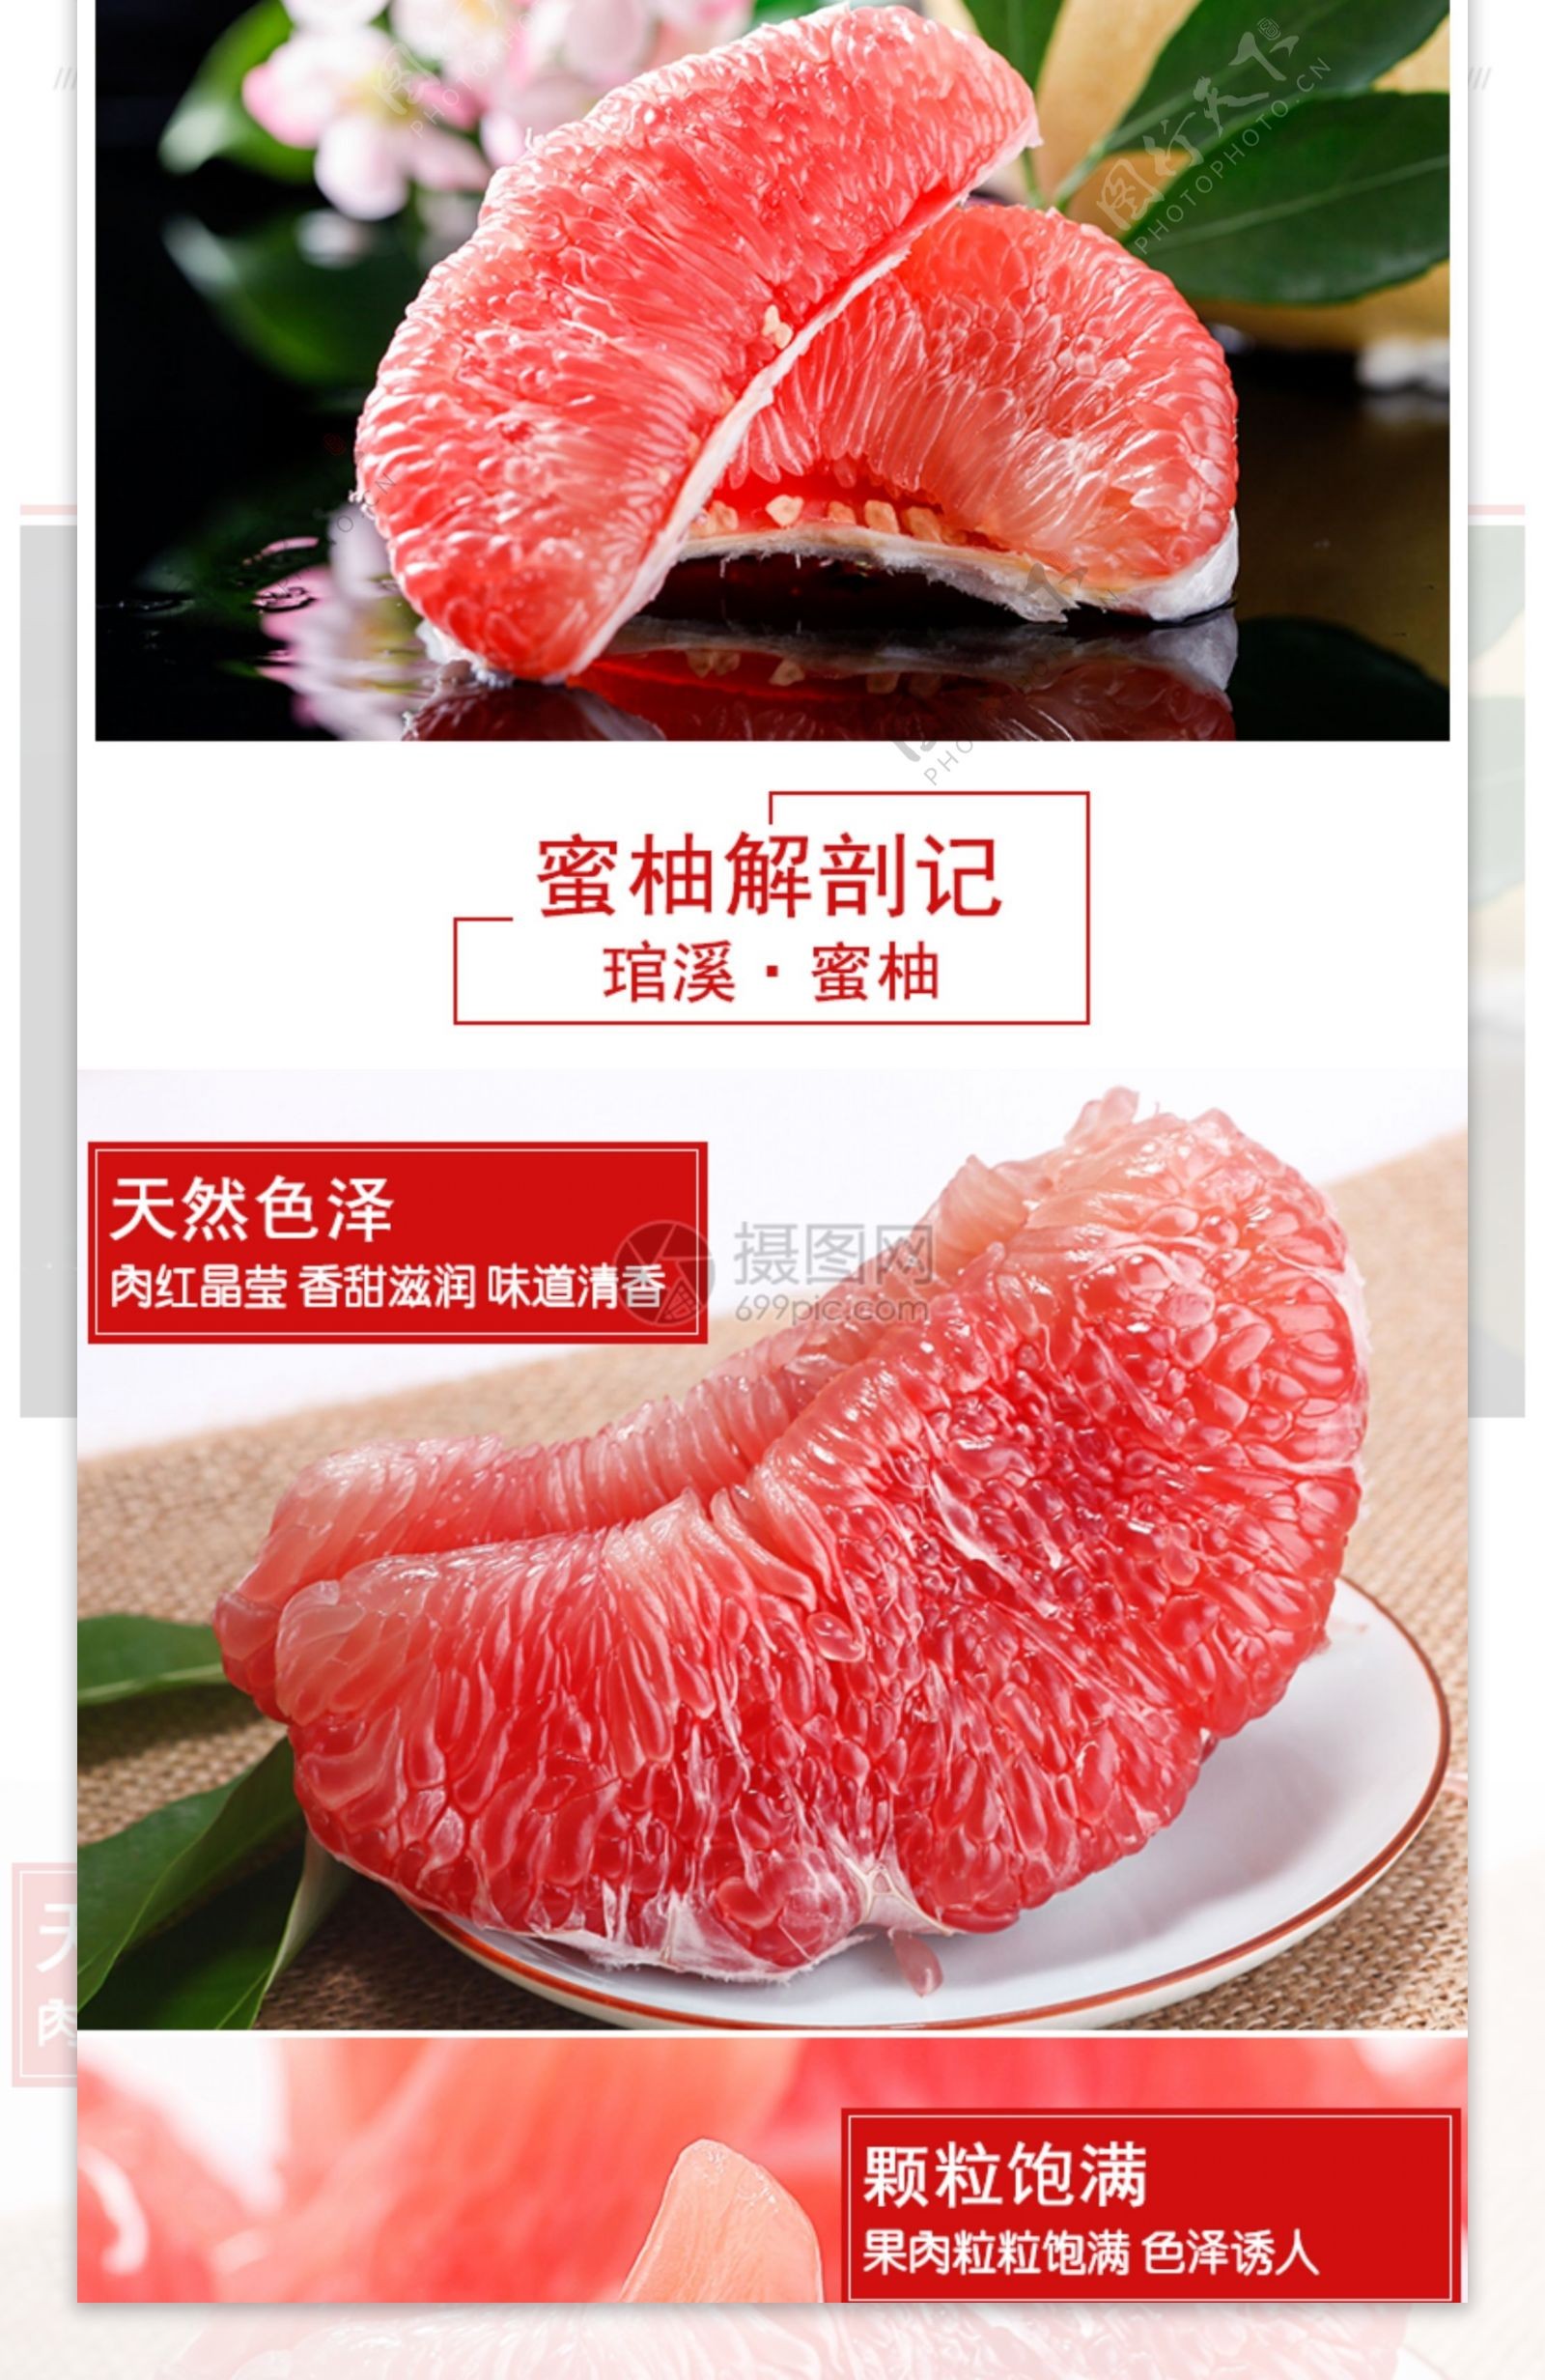 美味红柚促销淘宝详情页